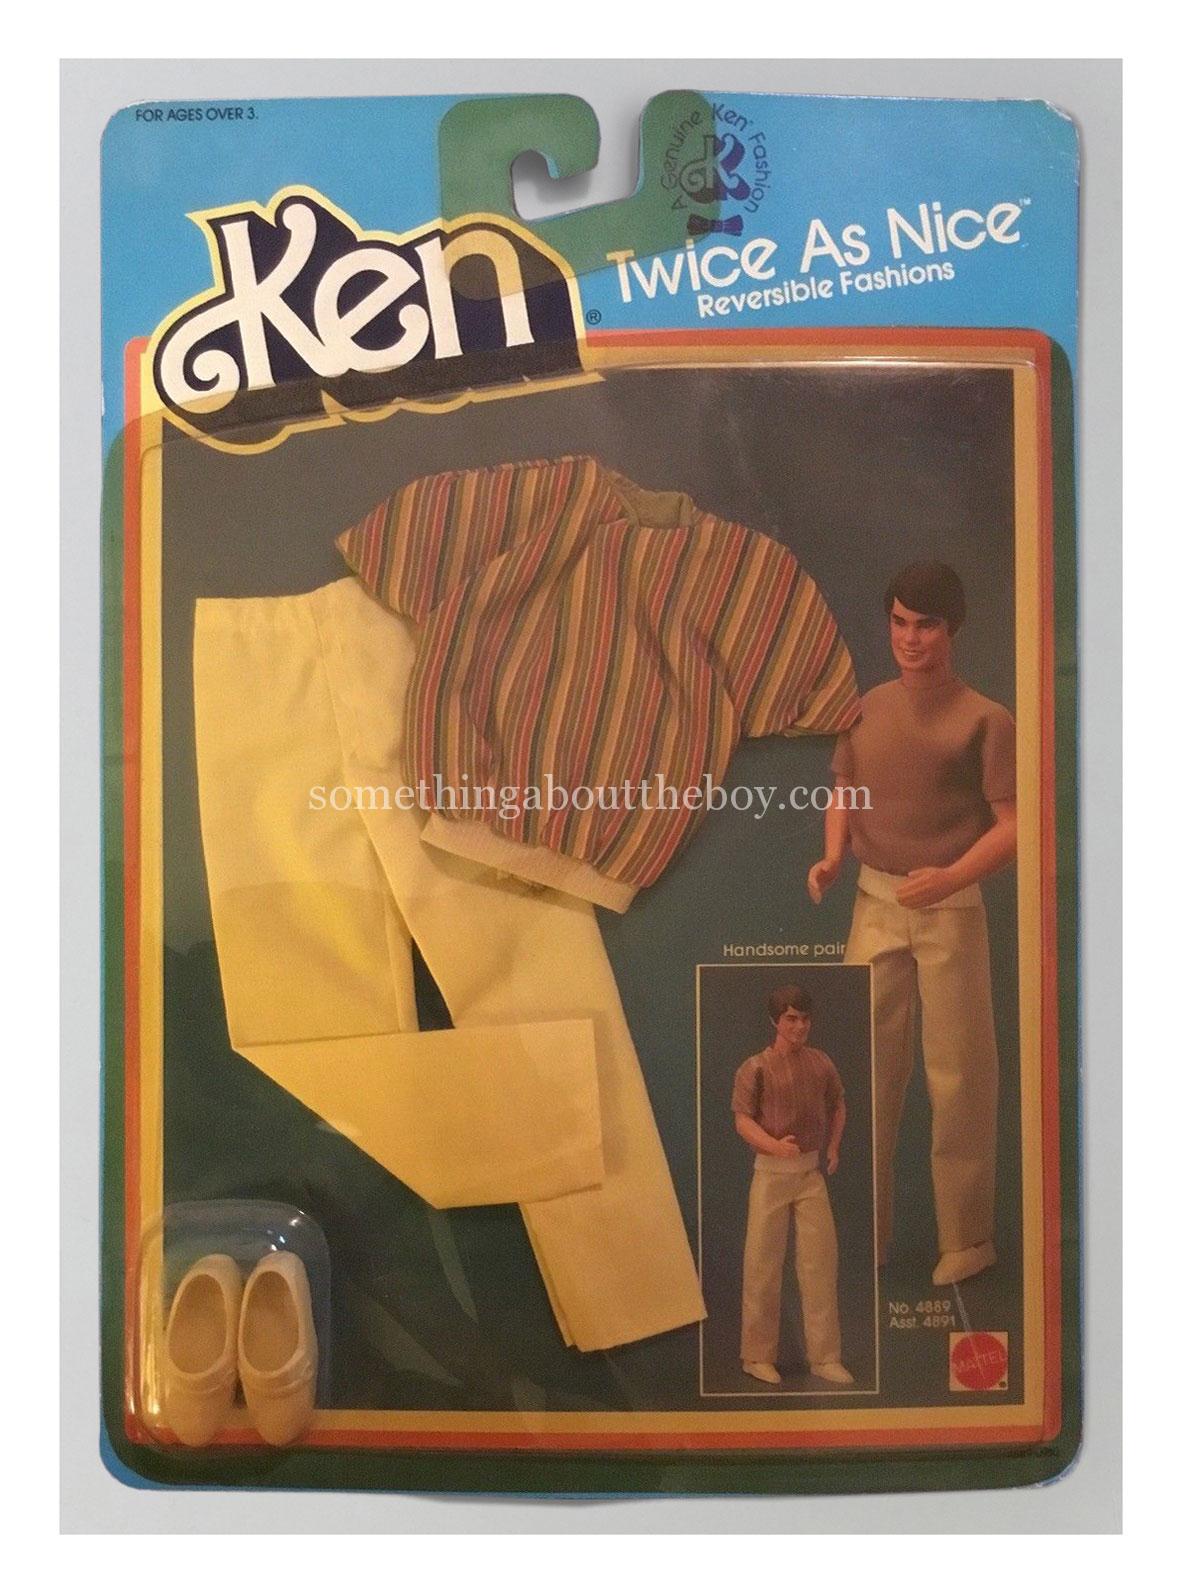 1984 Twice As Nice #4889 in original packaging